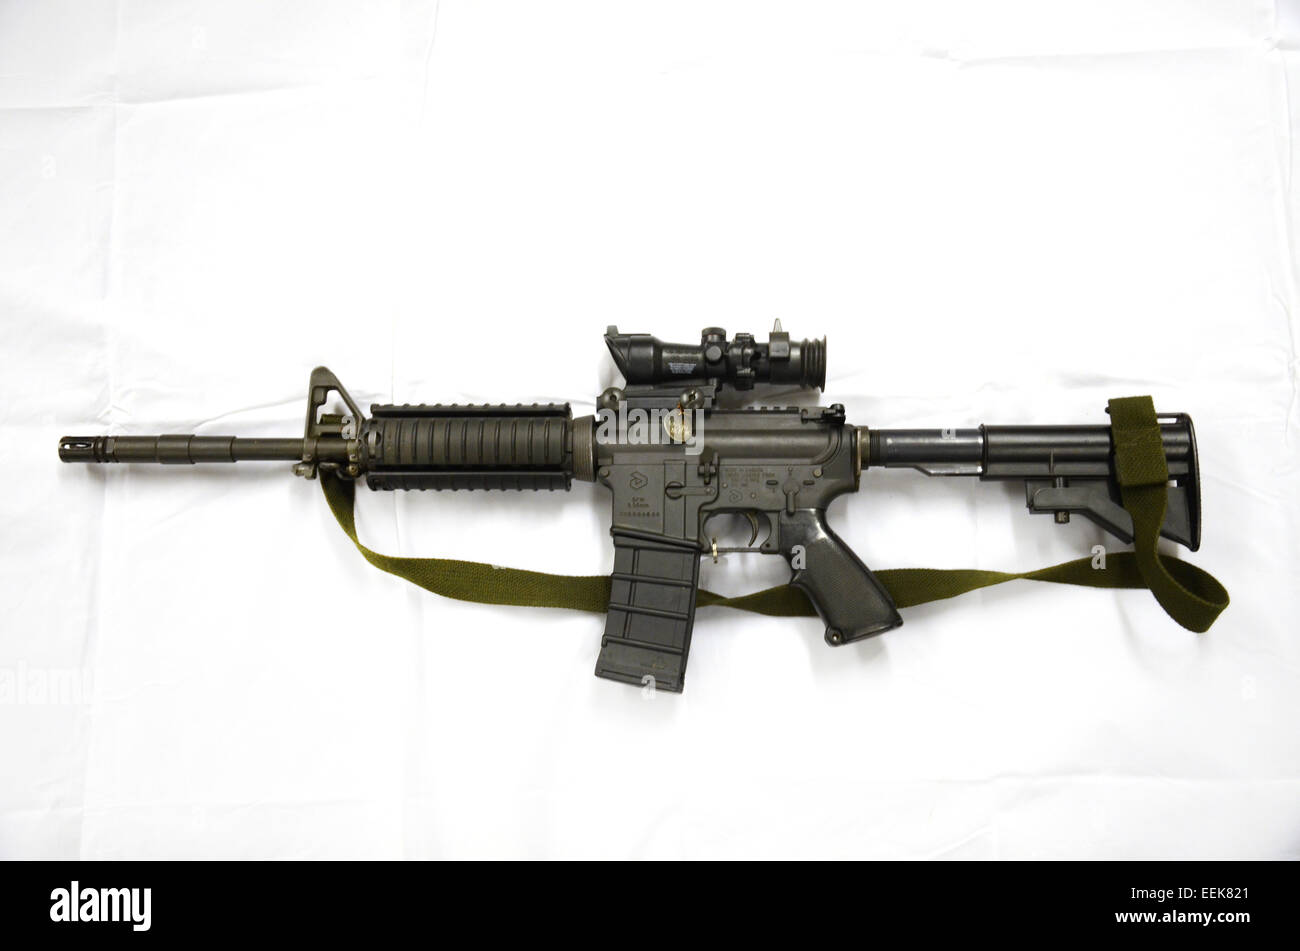 Diemaco CB 5.56mm Canada, Assault carbine copy of colt Commando Stock Photo